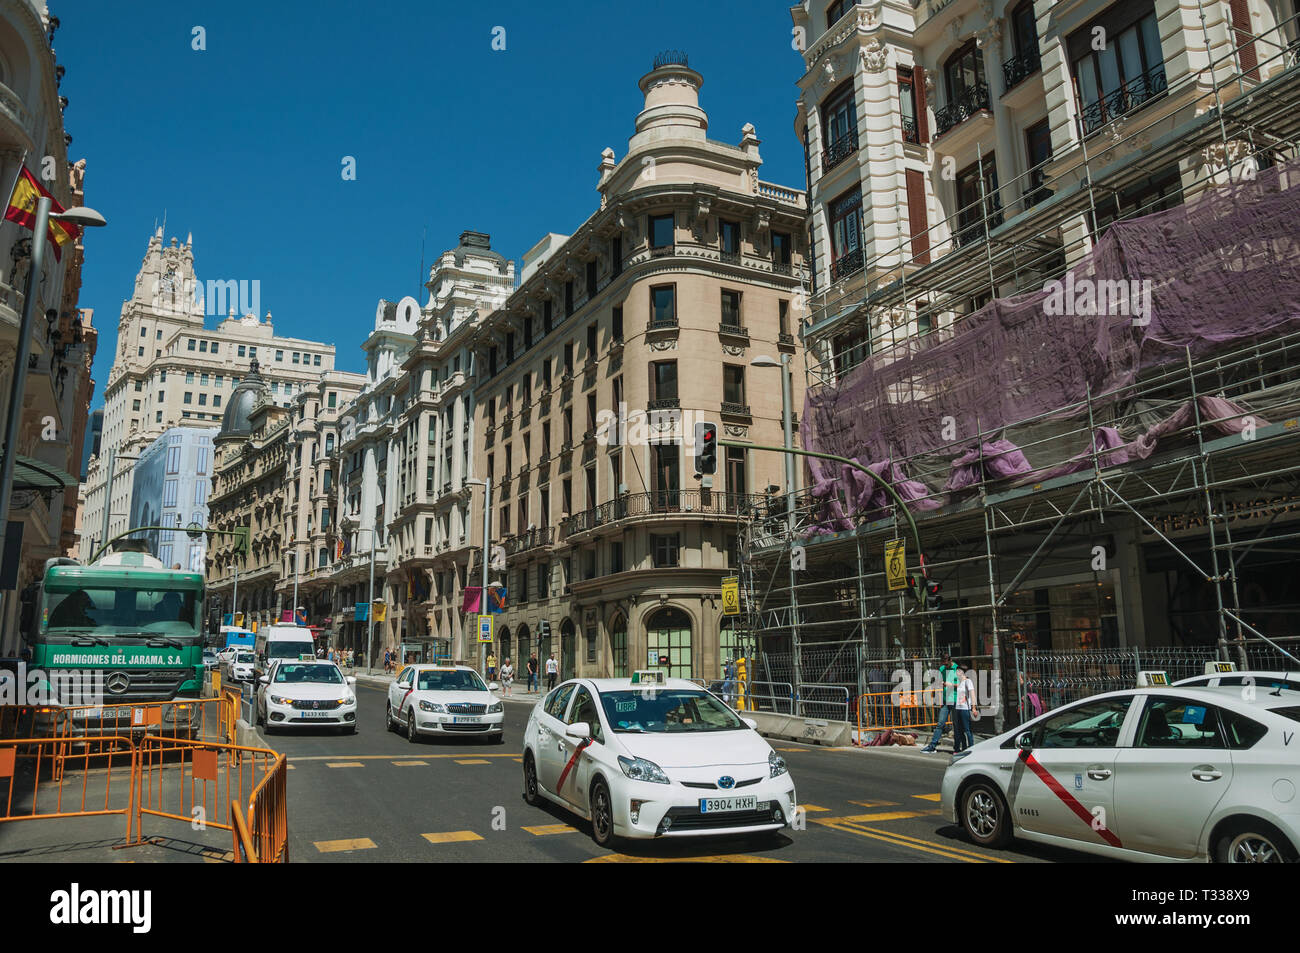 De vieux bâtiments avec des boutiques sur rue animée avec des gens et des voitures, dans une journée ensoleillée à Madrid. Capitale de l'Espagne avec dynamisme et vie culturelle intense. Banque D'Images